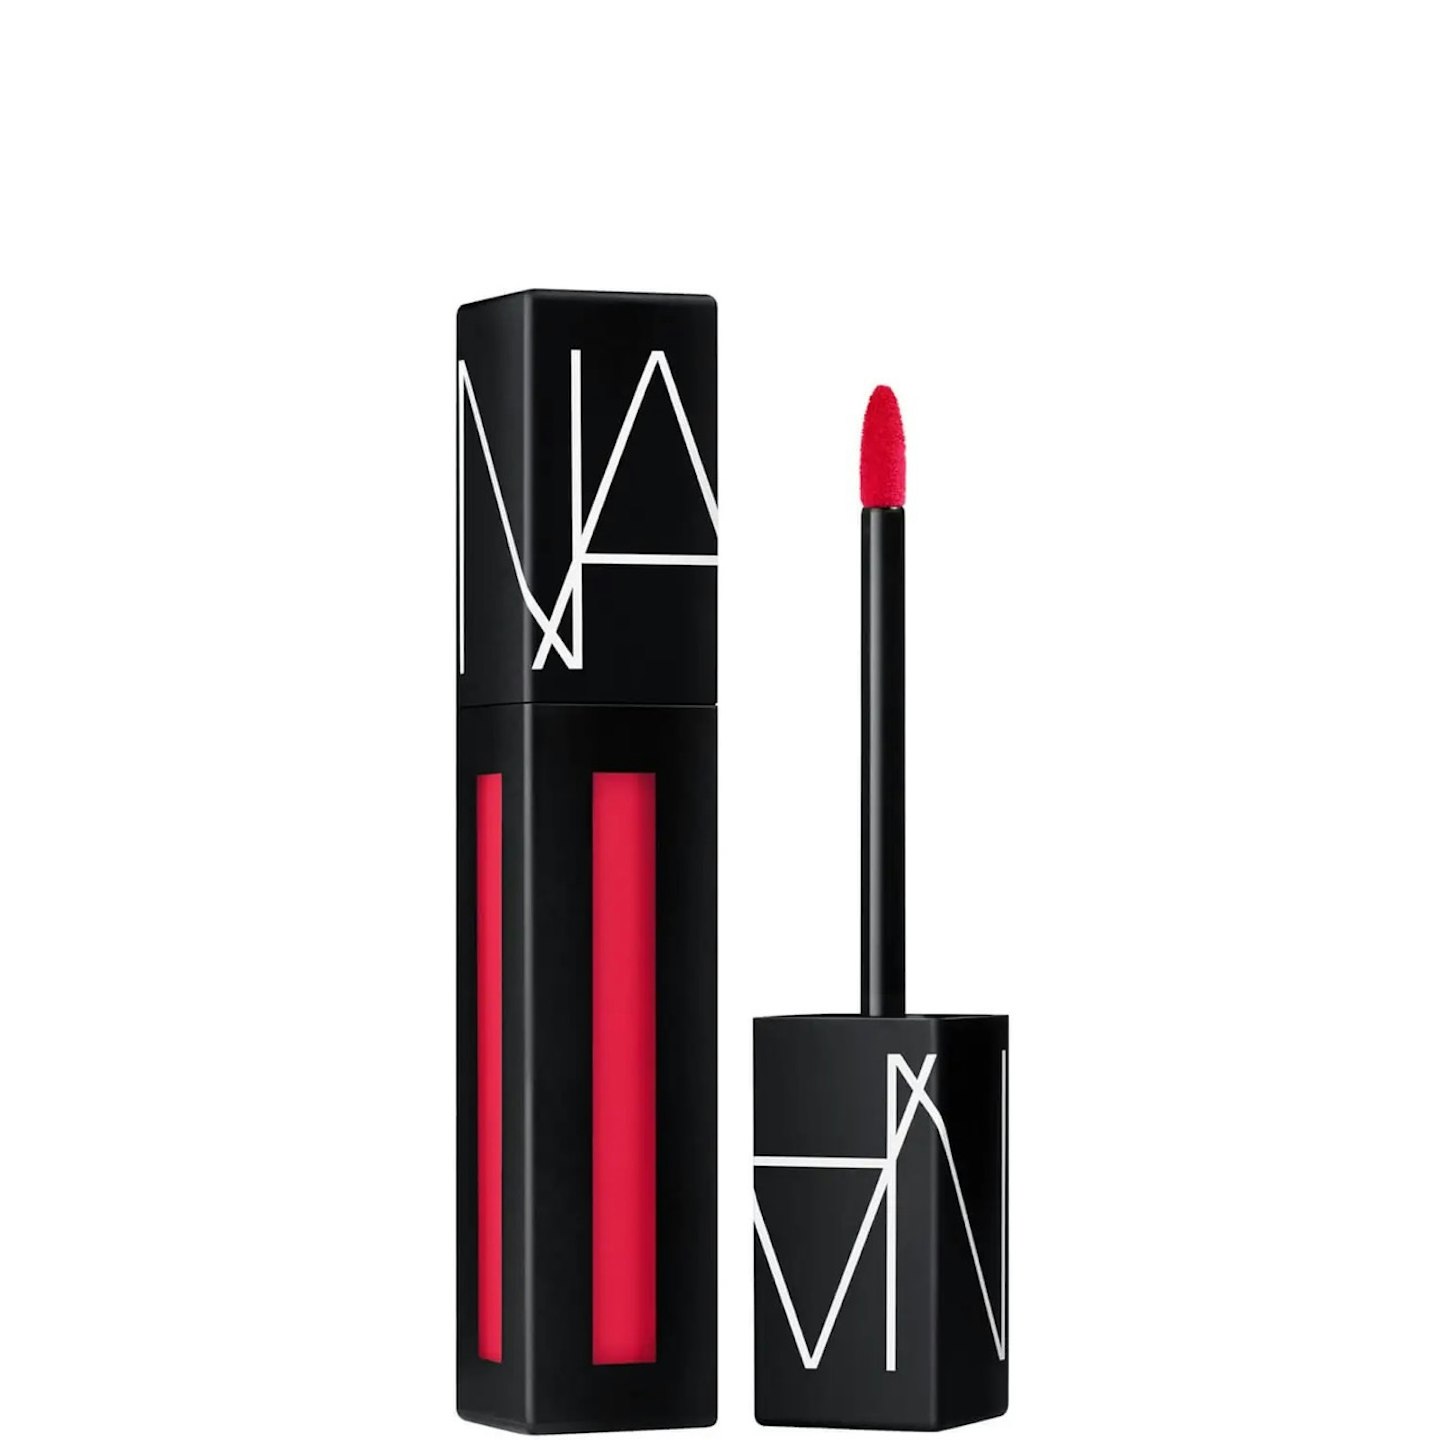 NARS Cosmetics Powermatte Lip Pigment in Dragon Girl, £25